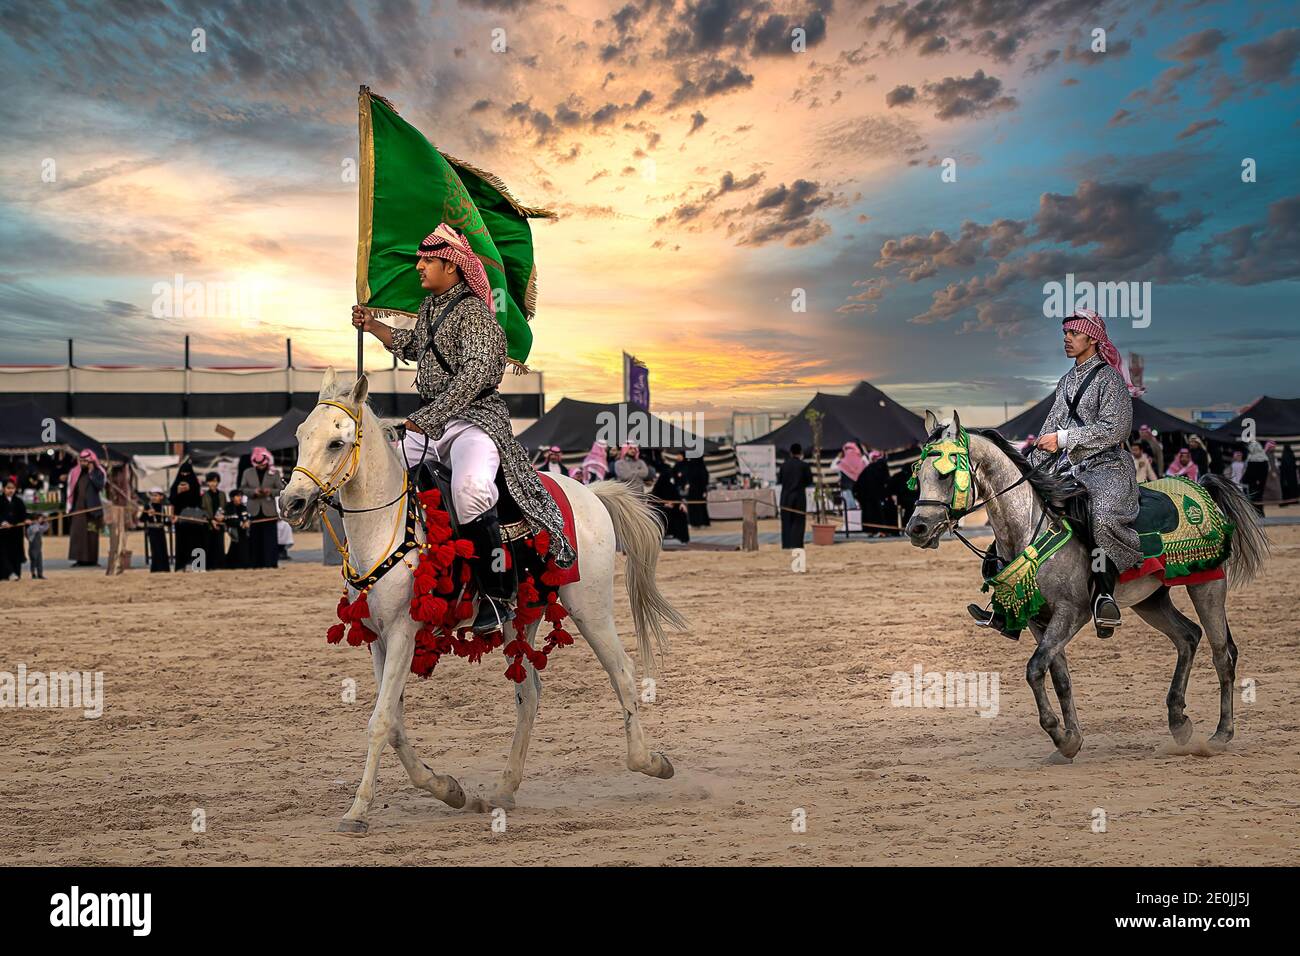 Cavalier arabe saoudien avec drapeau national de l'Arabie Saoudite sur le festival traditionnel de safari dans le désert à abqaiq Arabie Saoudite. 10 janvier 2020 Banque D'Images